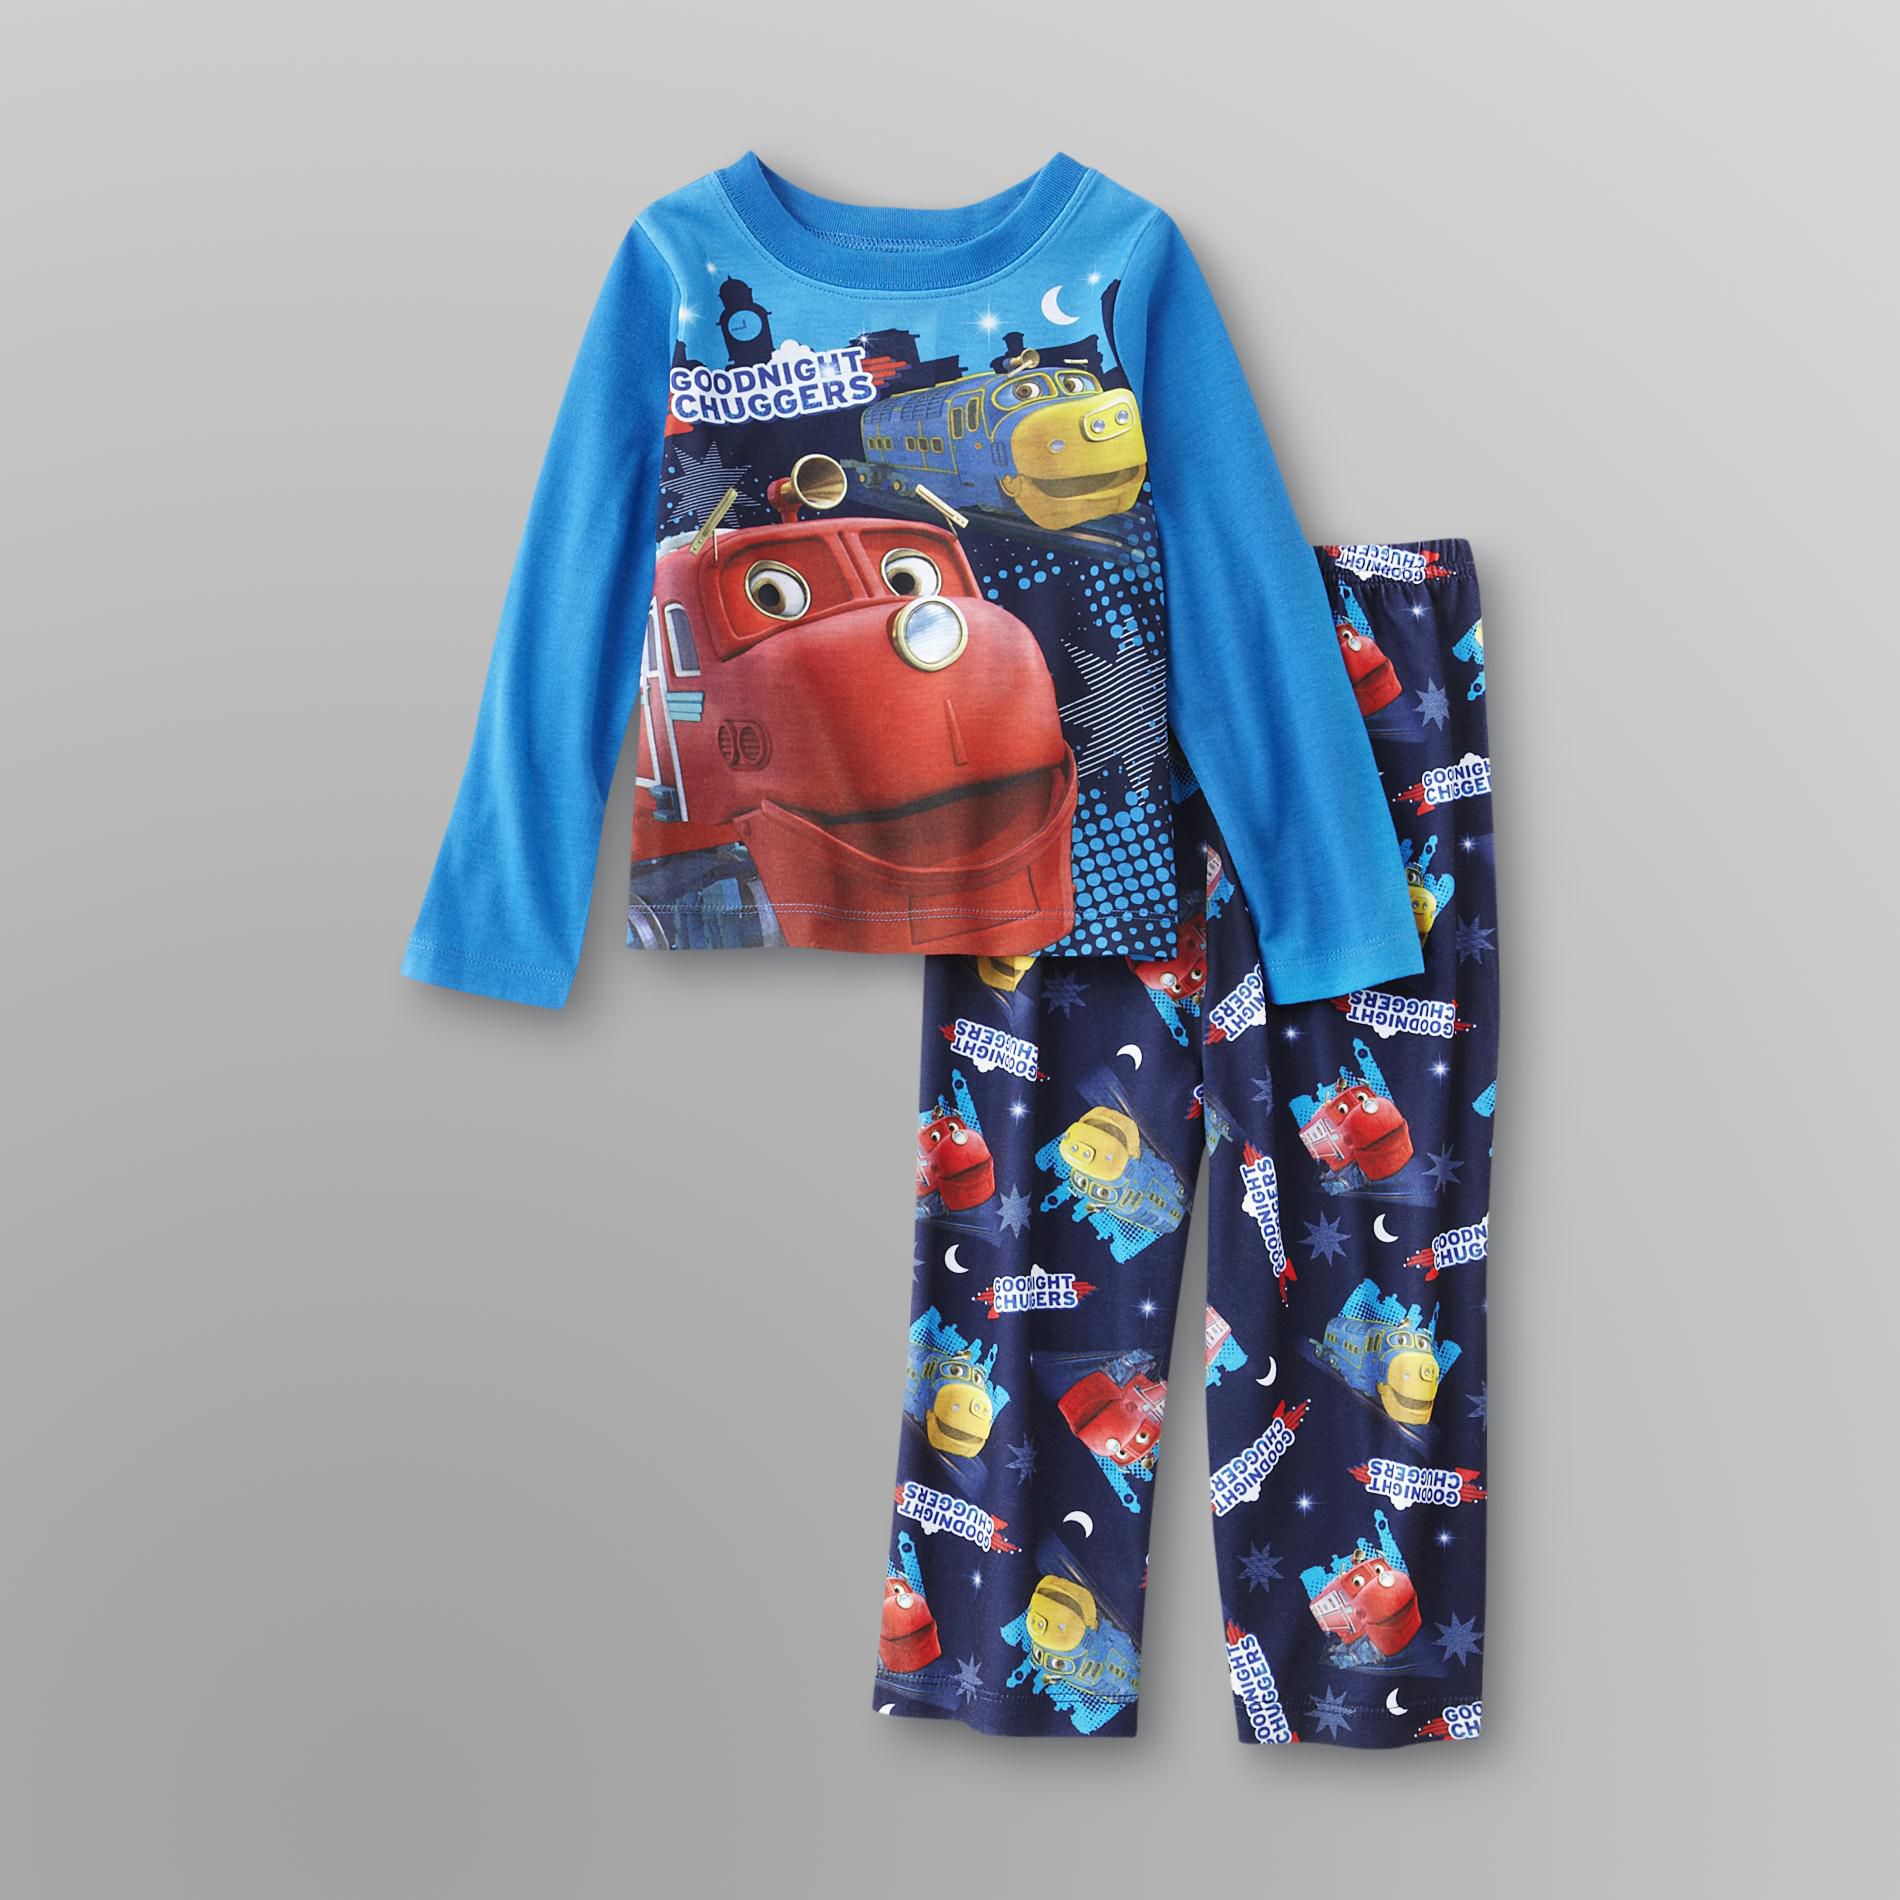 Chuggington Toddler Boy's Pajamas